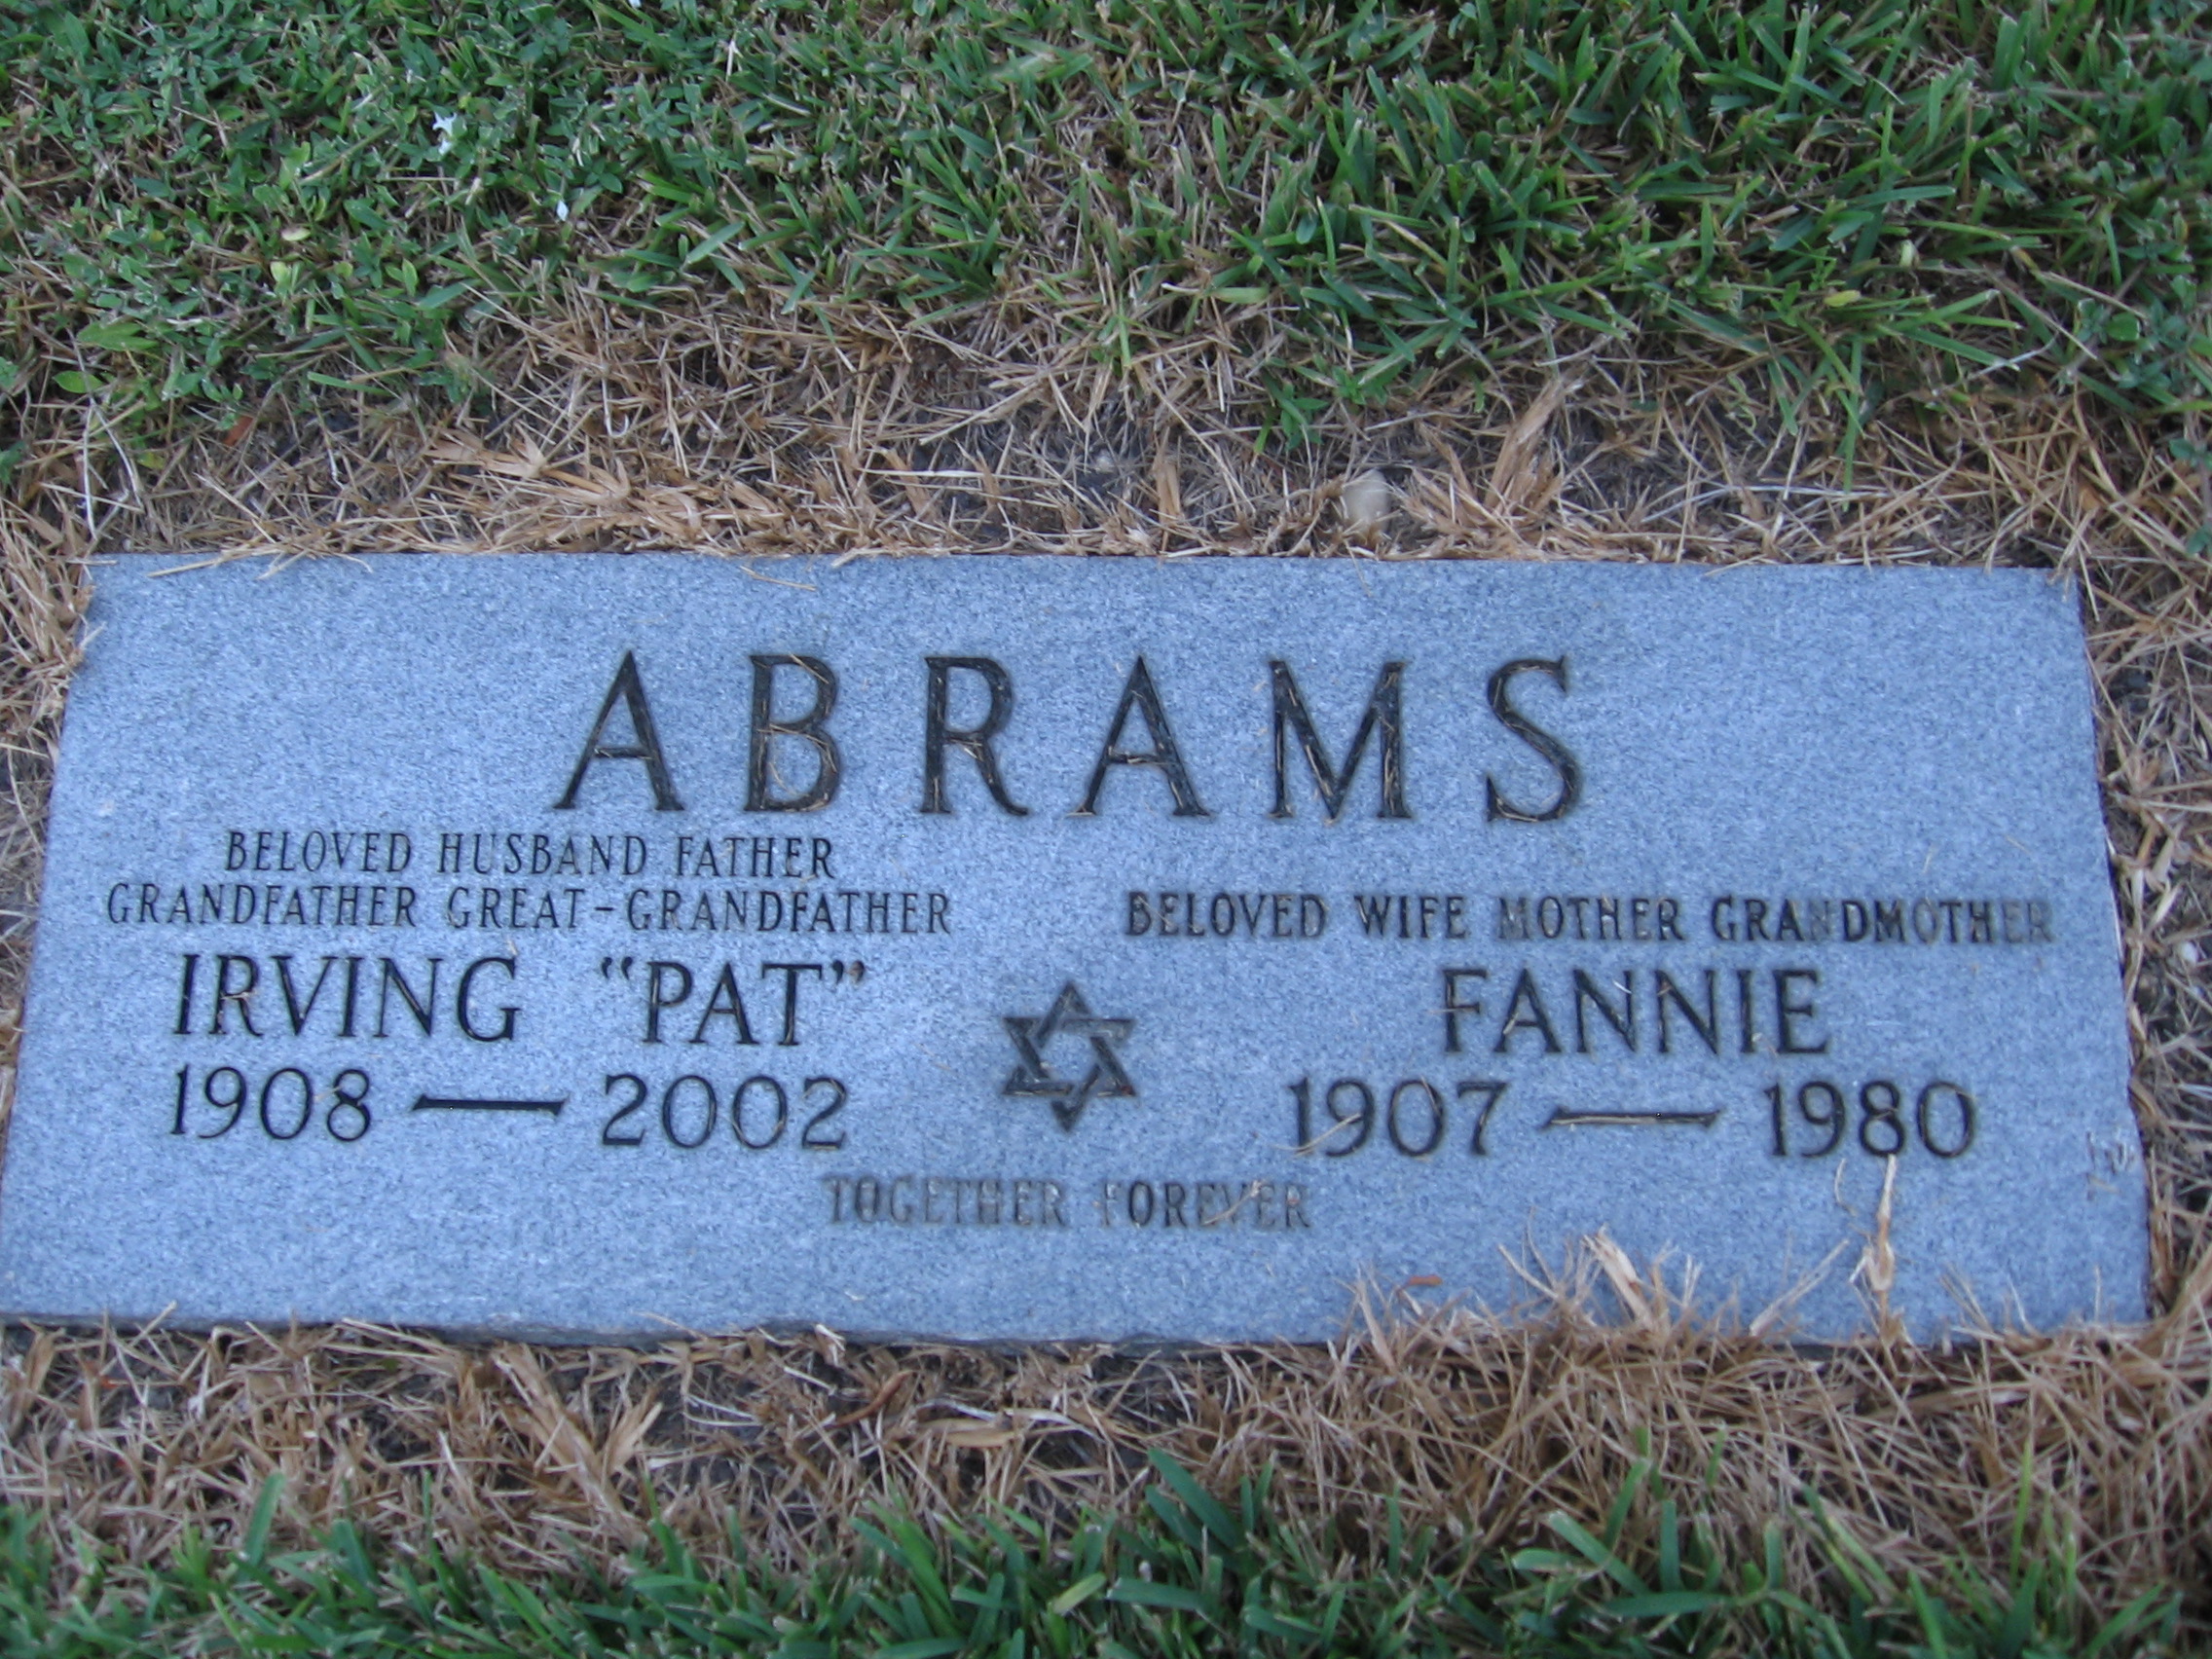 Irving "Pat" Abrams